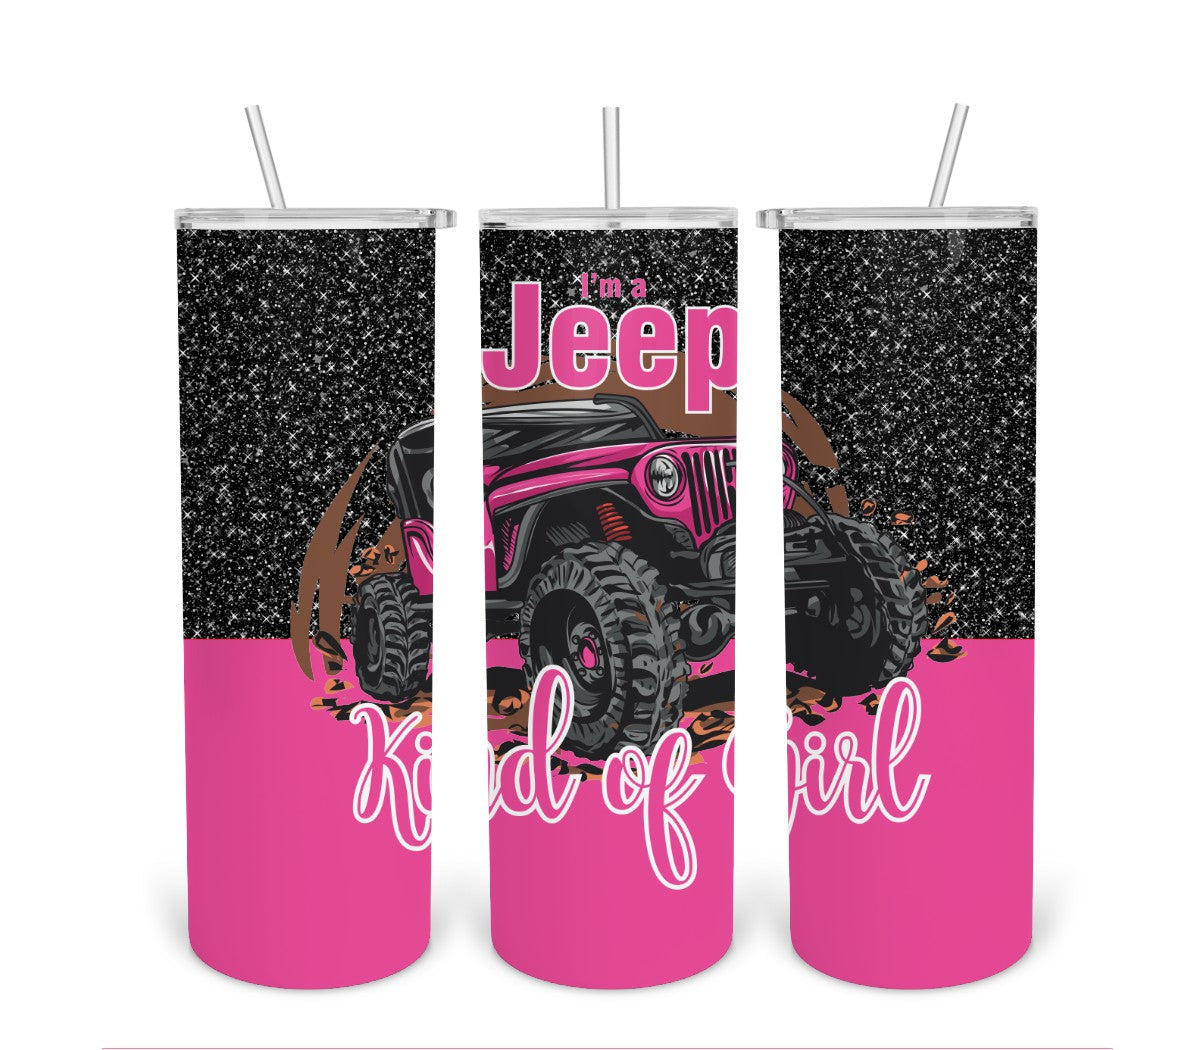 Jeep Kind Of Girl 2-Tumbler Digital Design